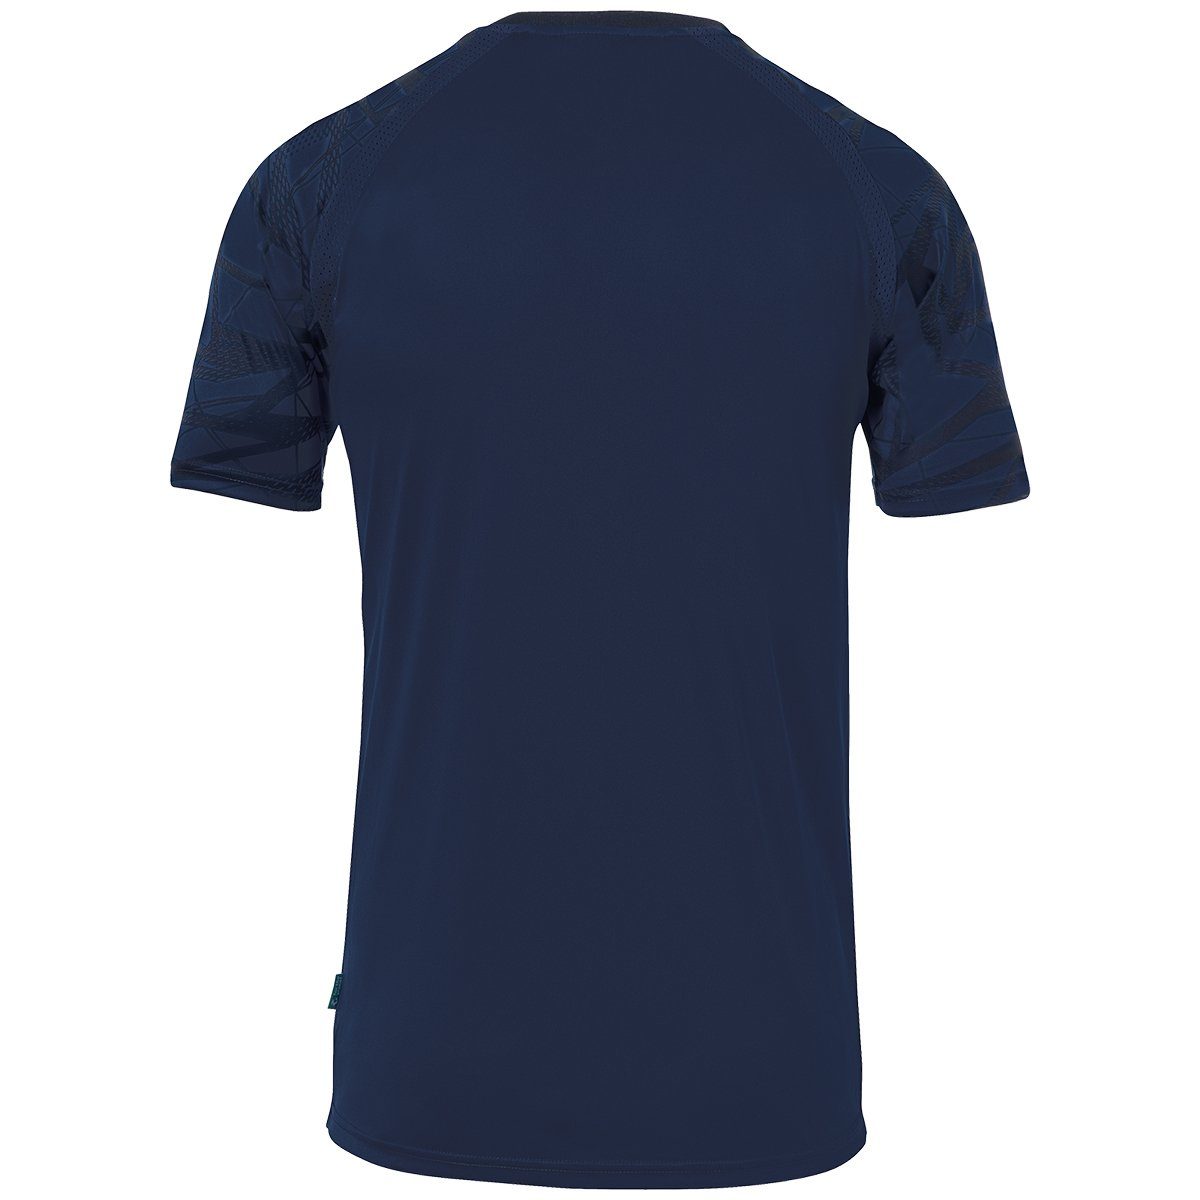 Trainingsshirt uhlsport uhlsport marine/marine 25 GOAL Trainings-T-Shirt atmungsaktiv TRIKOT KURZARM